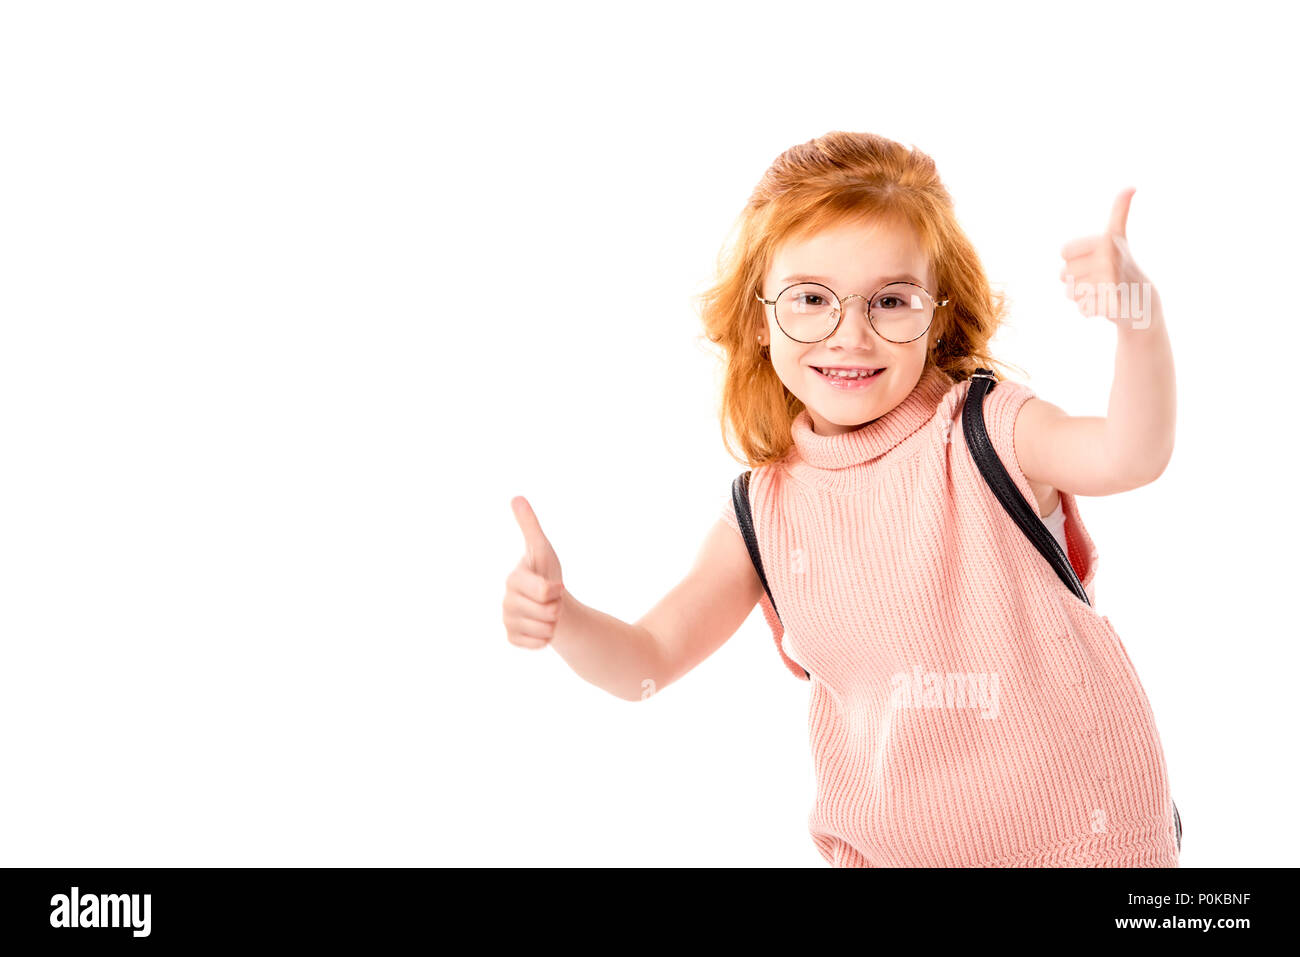 Capelli rossi kid con zaino che mostra pollice in alto isolato su bianco Foto Stock